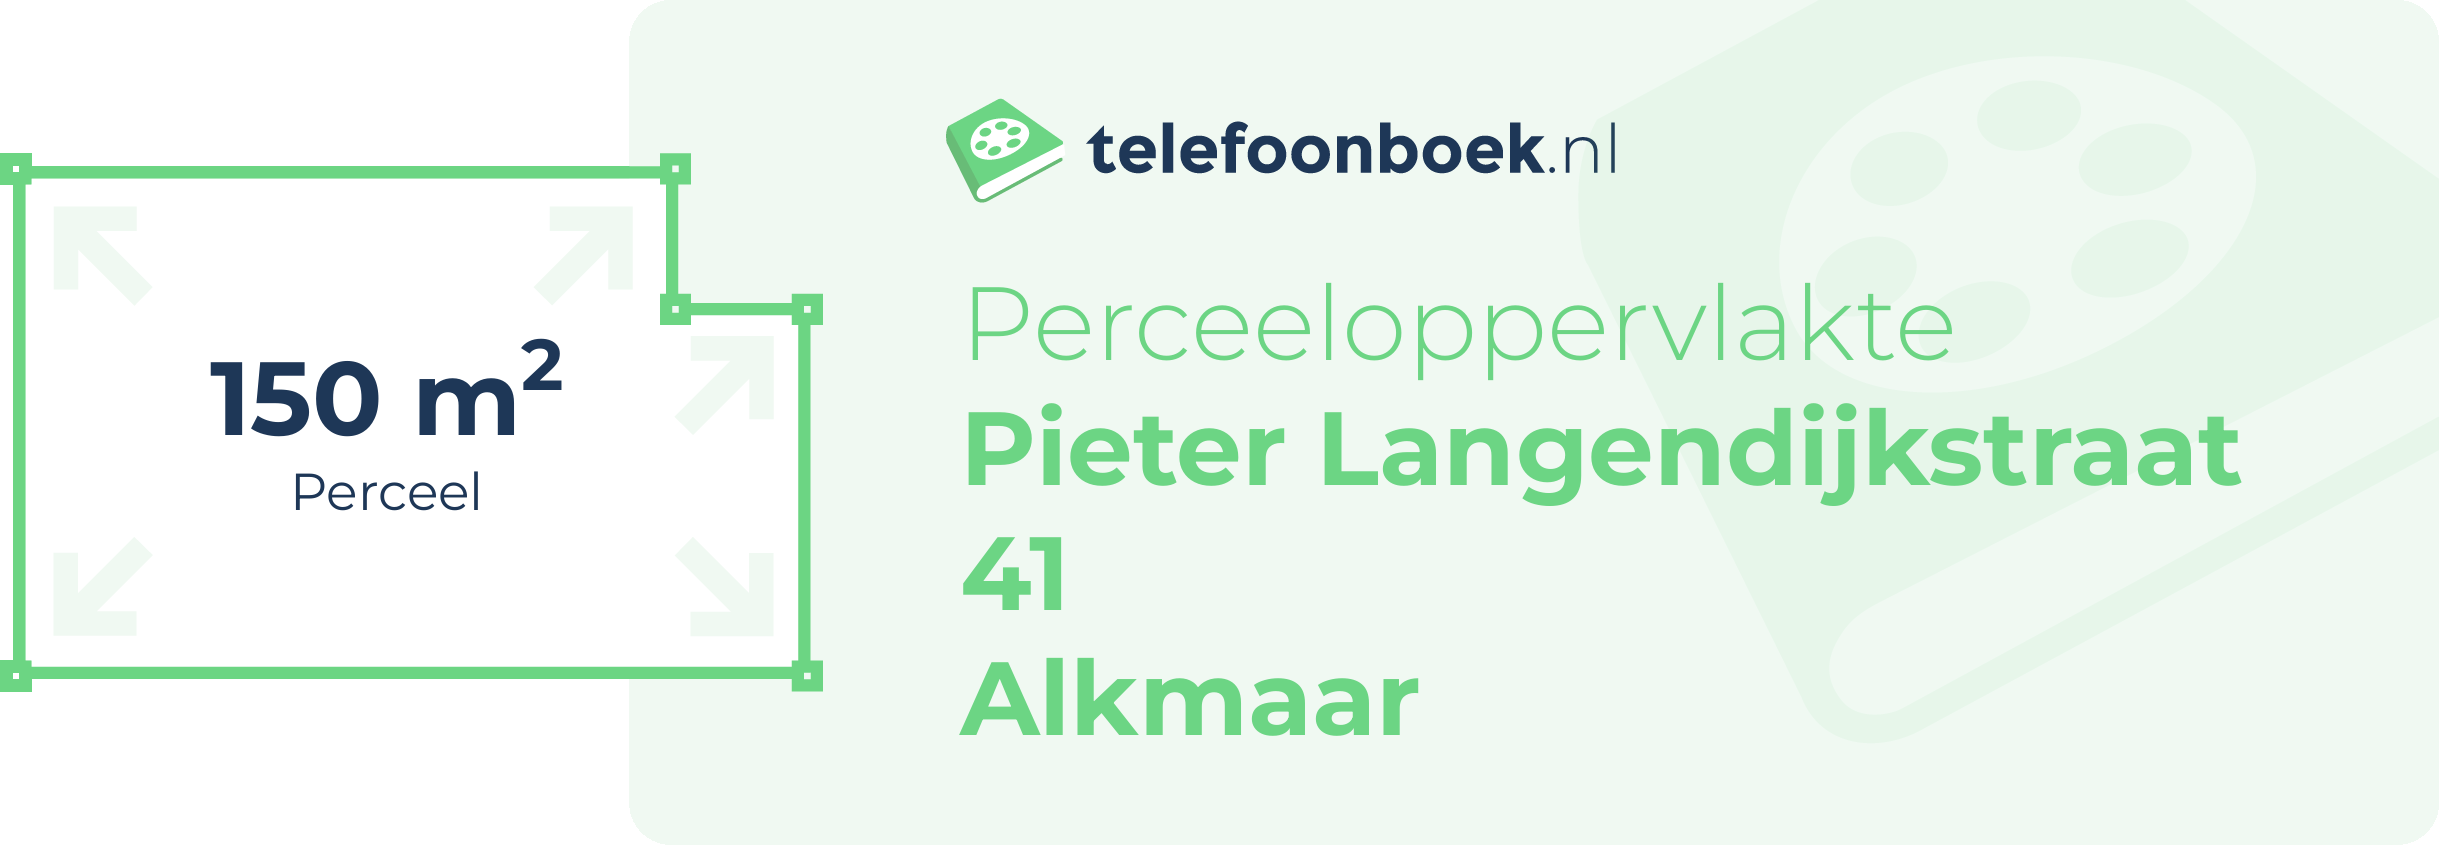 Perceeloppervlakte Pieter Langendijkstraat 41 Alkmaar